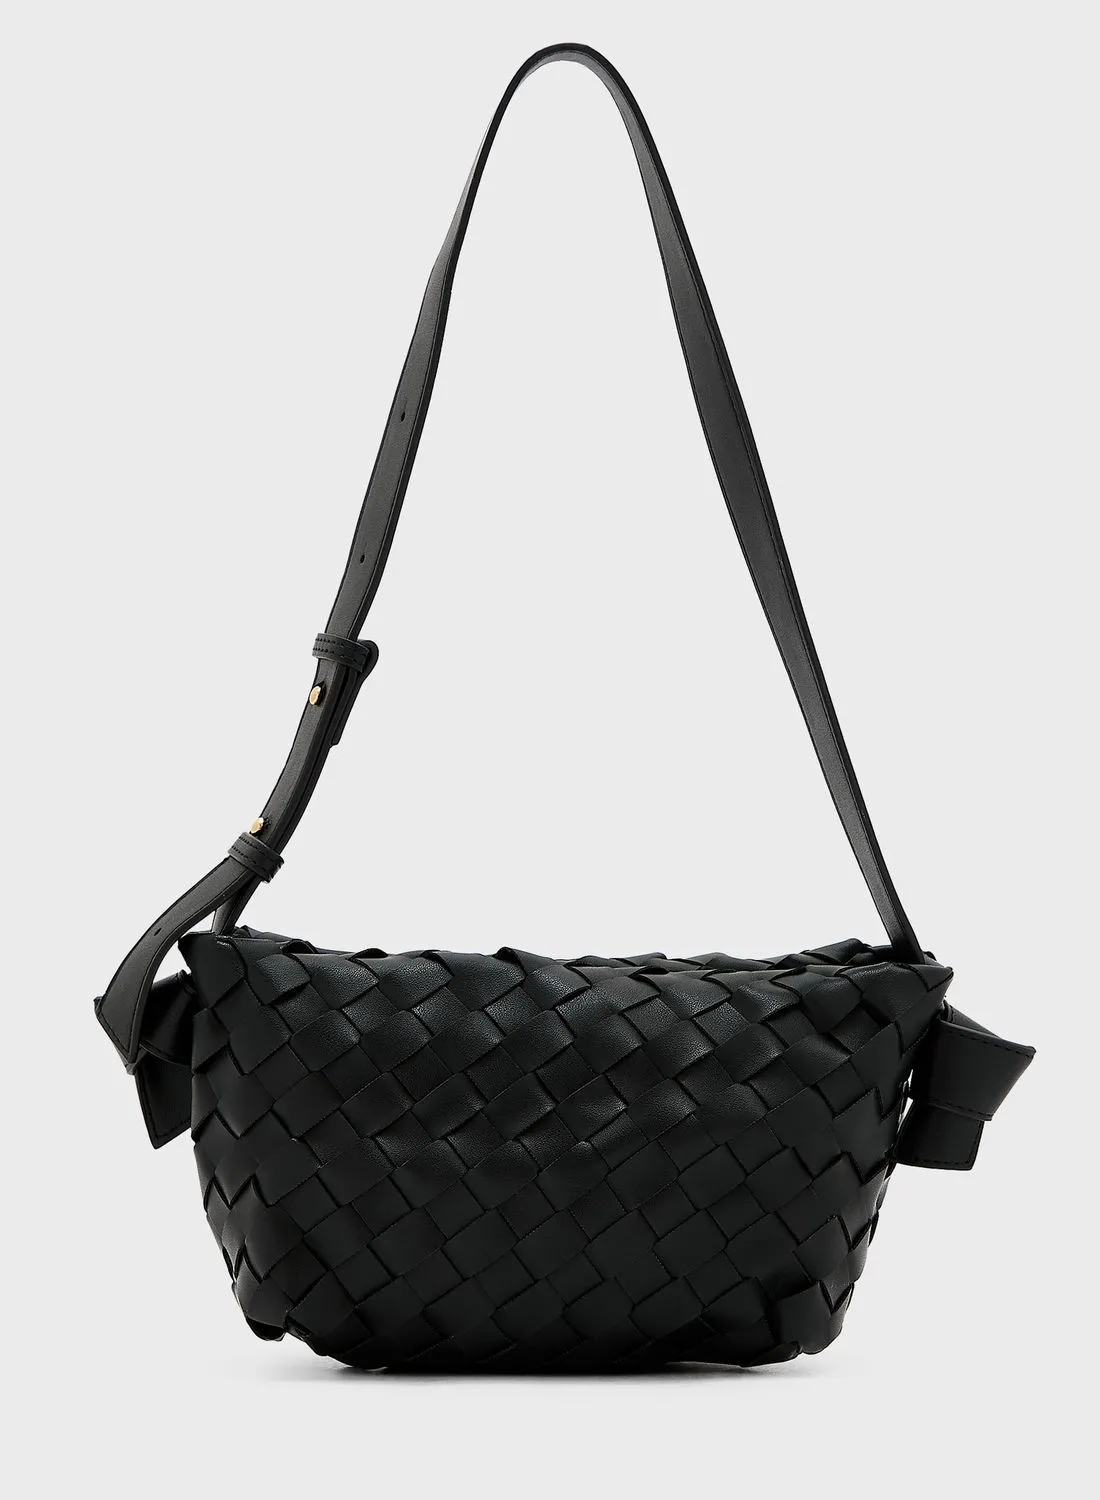 ELLA Weave Handbag With Shoulder Strap